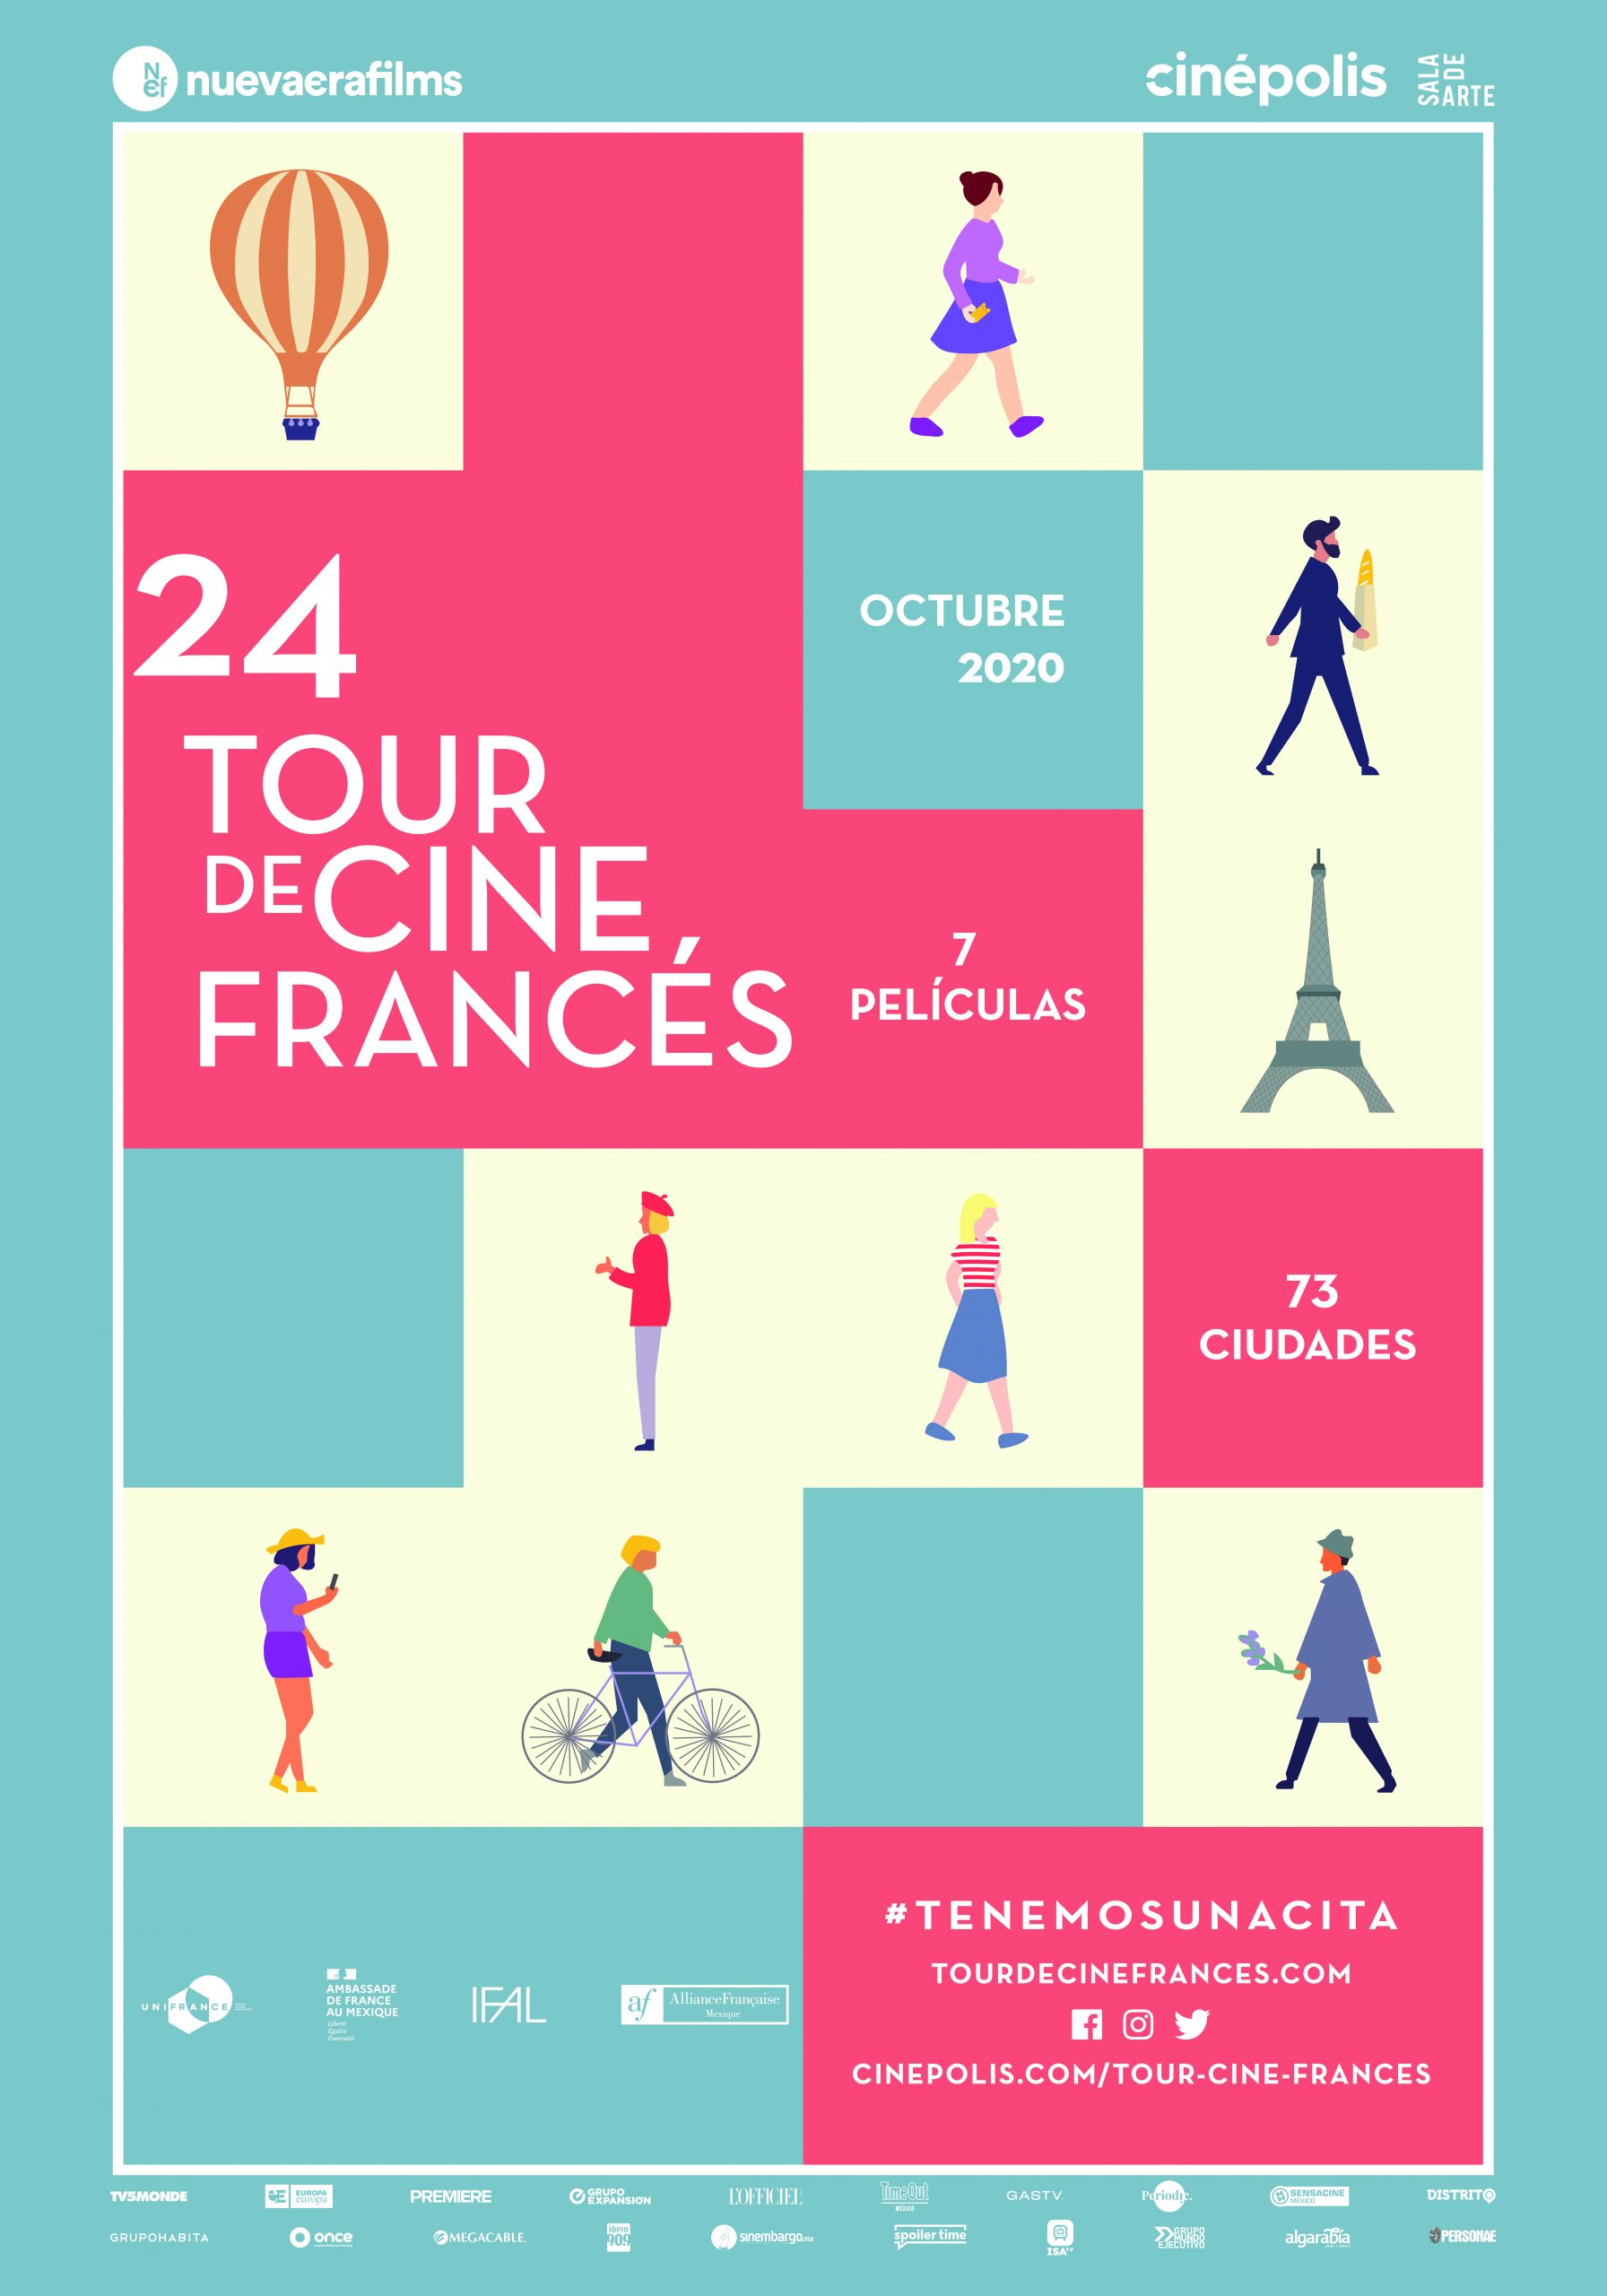 Checa todos los detalles del Tour de Cine Francés 2020